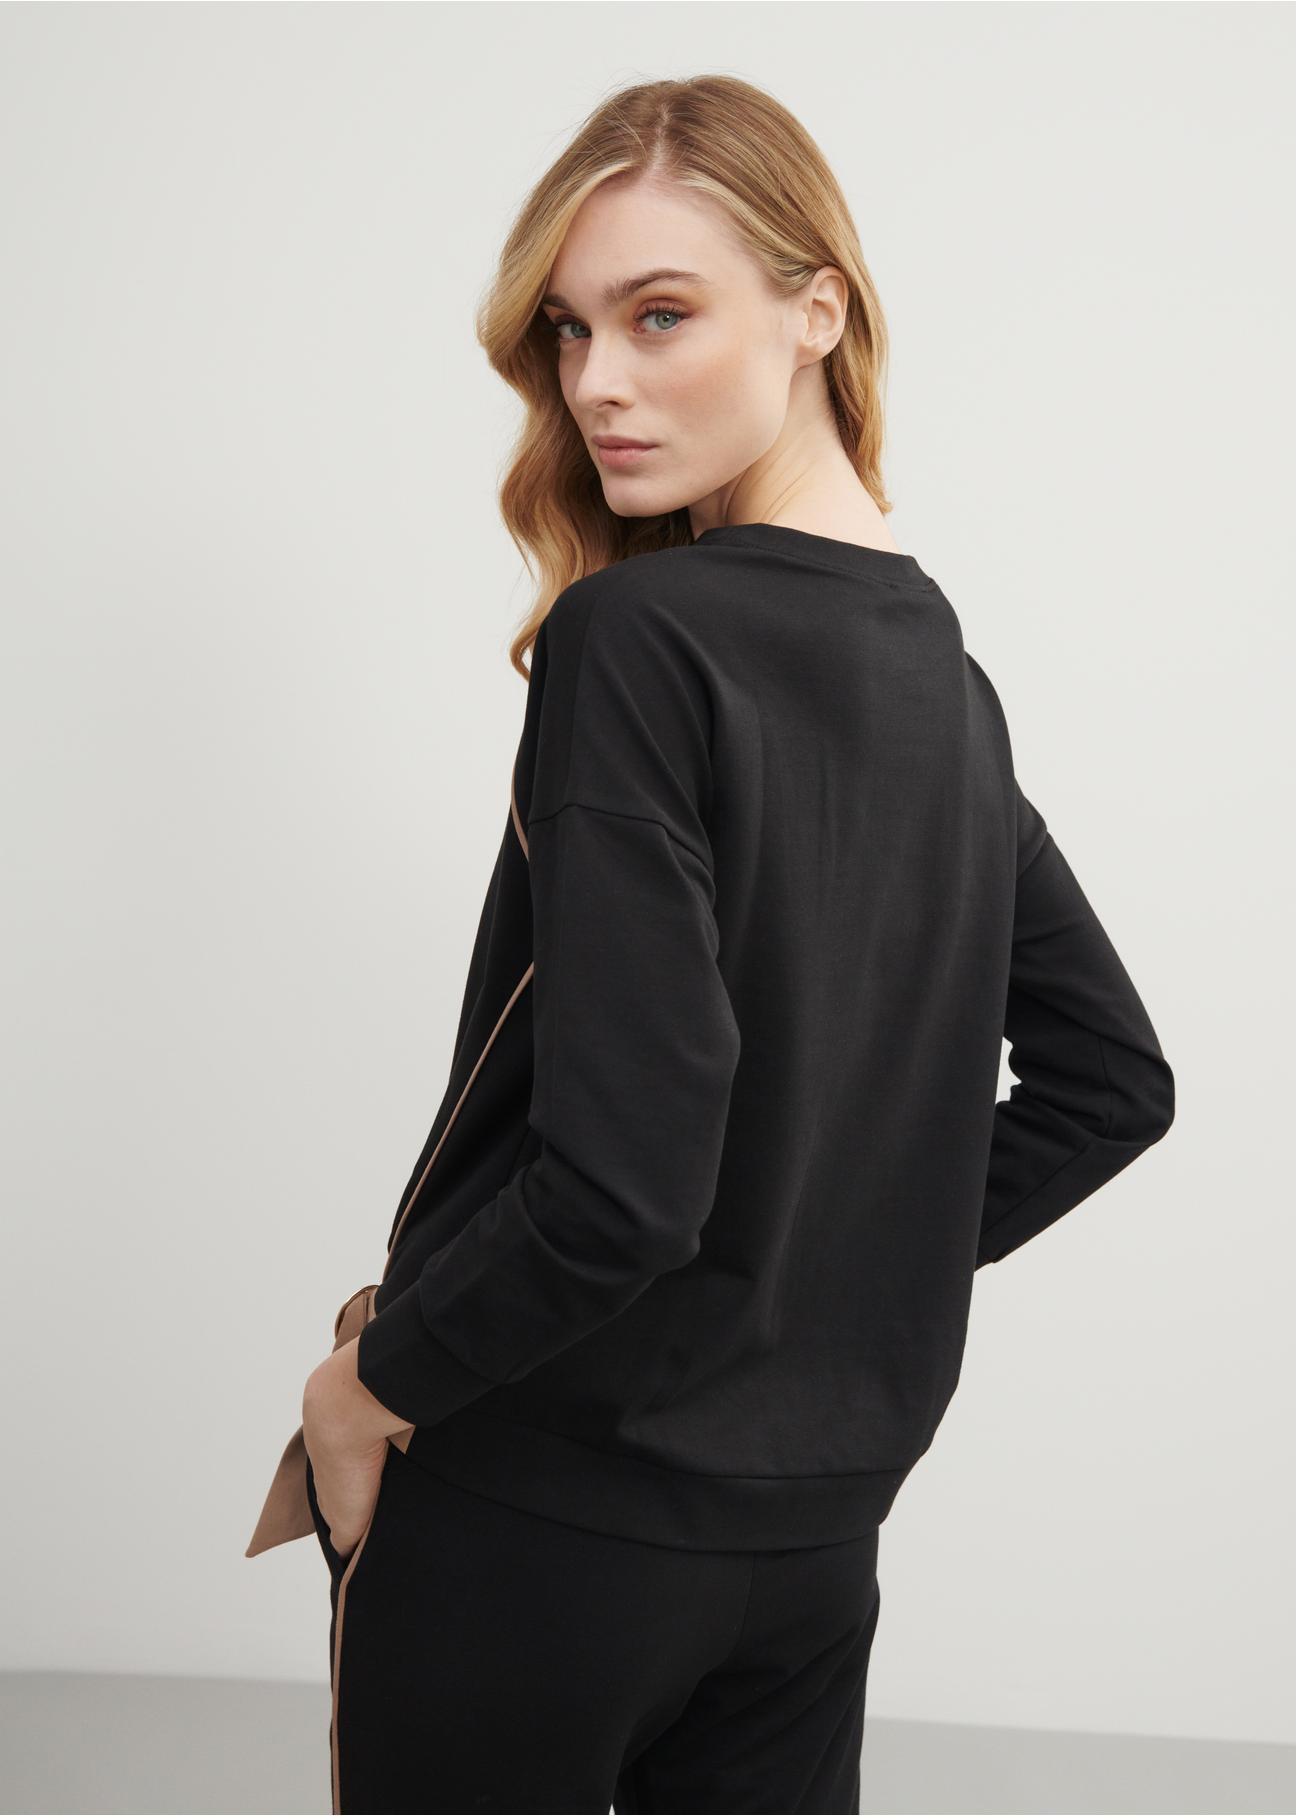 Czarna bluza damska  z nadrukiem BLZDT-0083-99(W23)